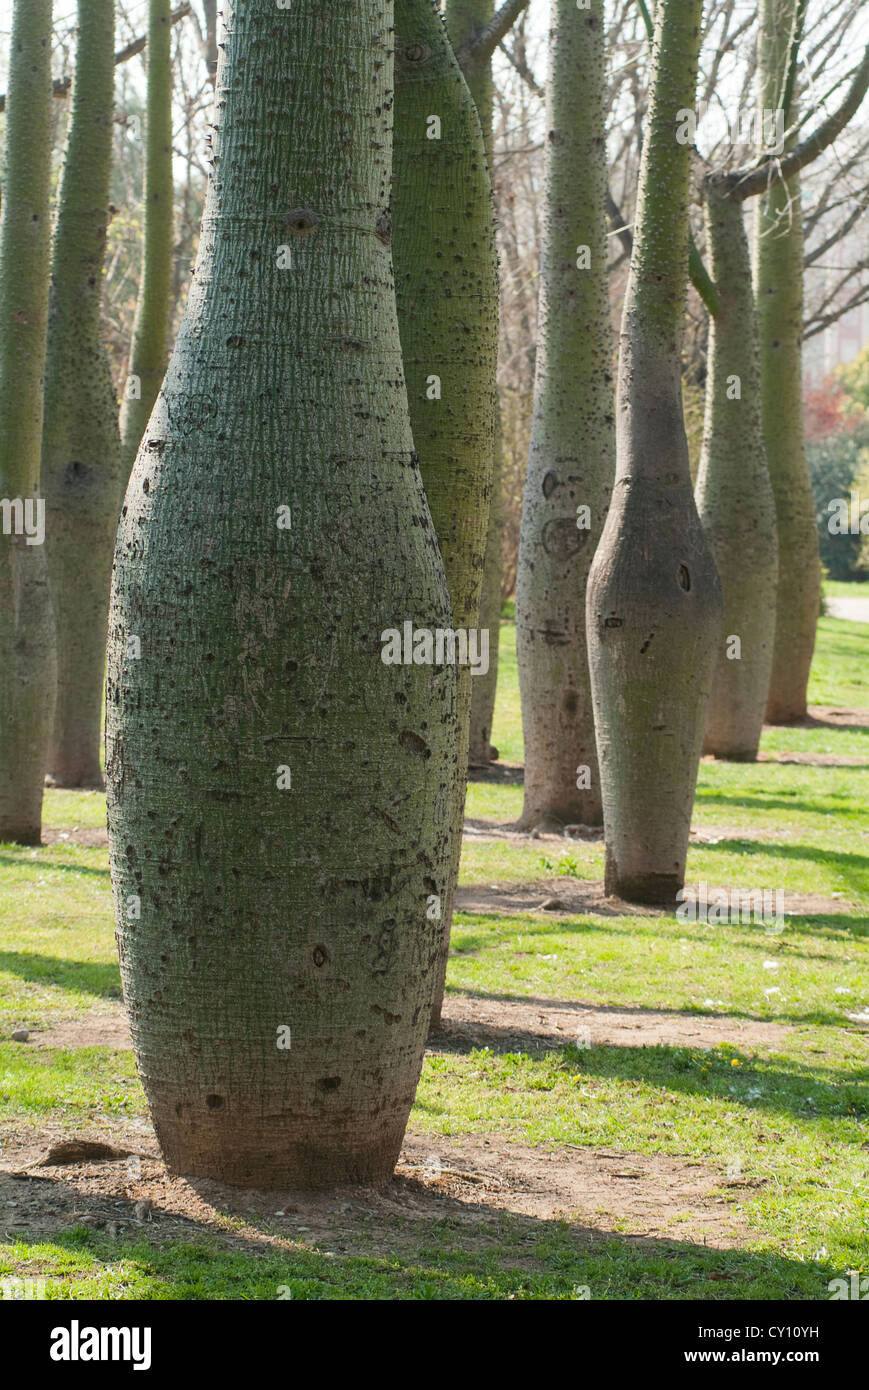 Dettaglio del tronco di Ceiba speciosa, giardino di Turia, Valencia, Spagna, Europa Foto Stock